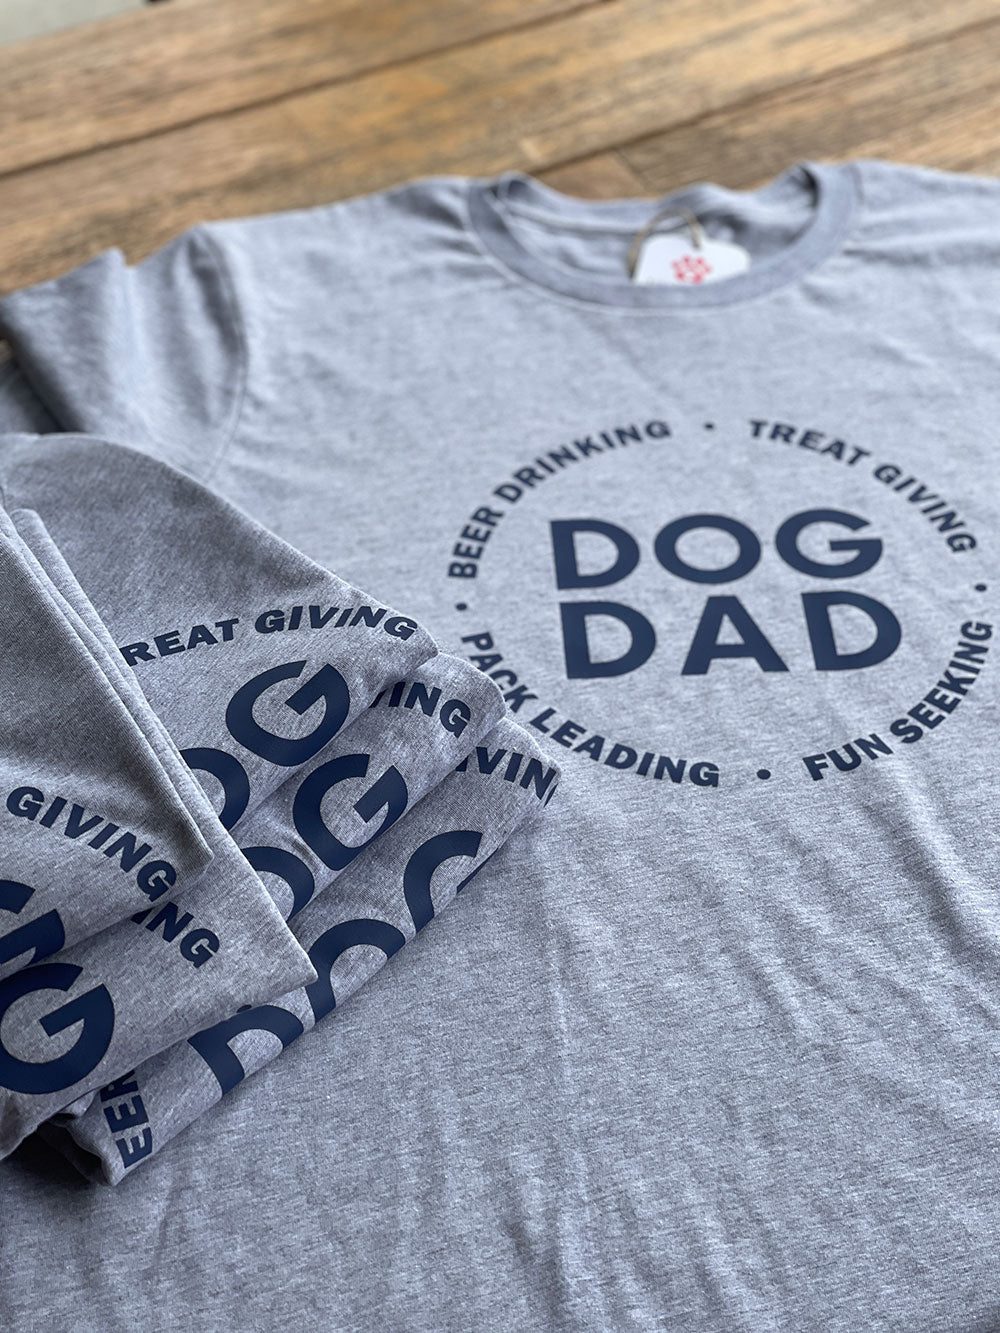 That Dog Dad T-shirt